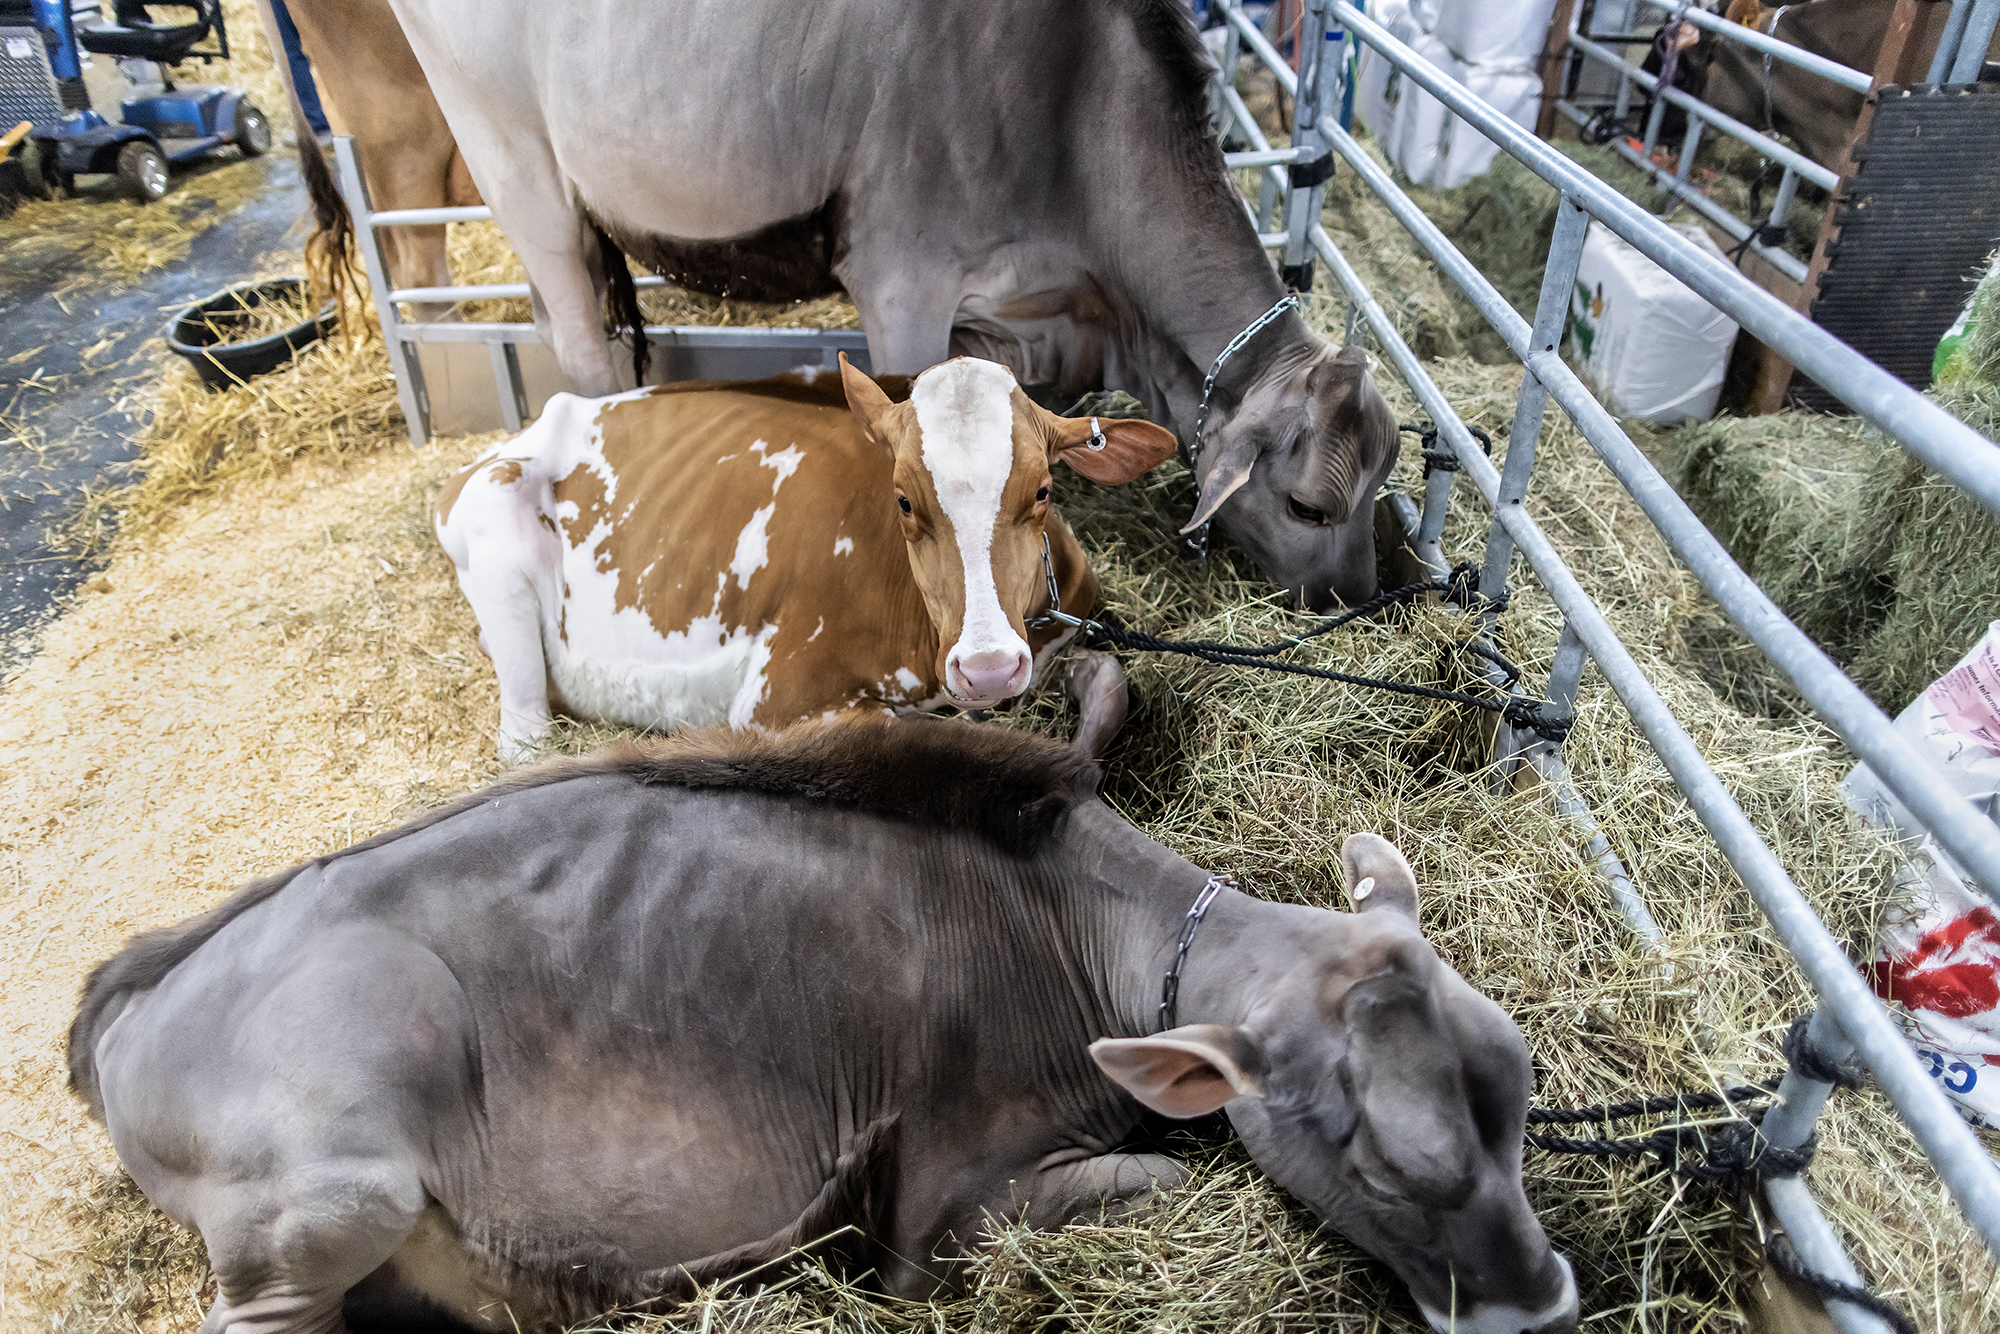 calves in pen at pa farm show